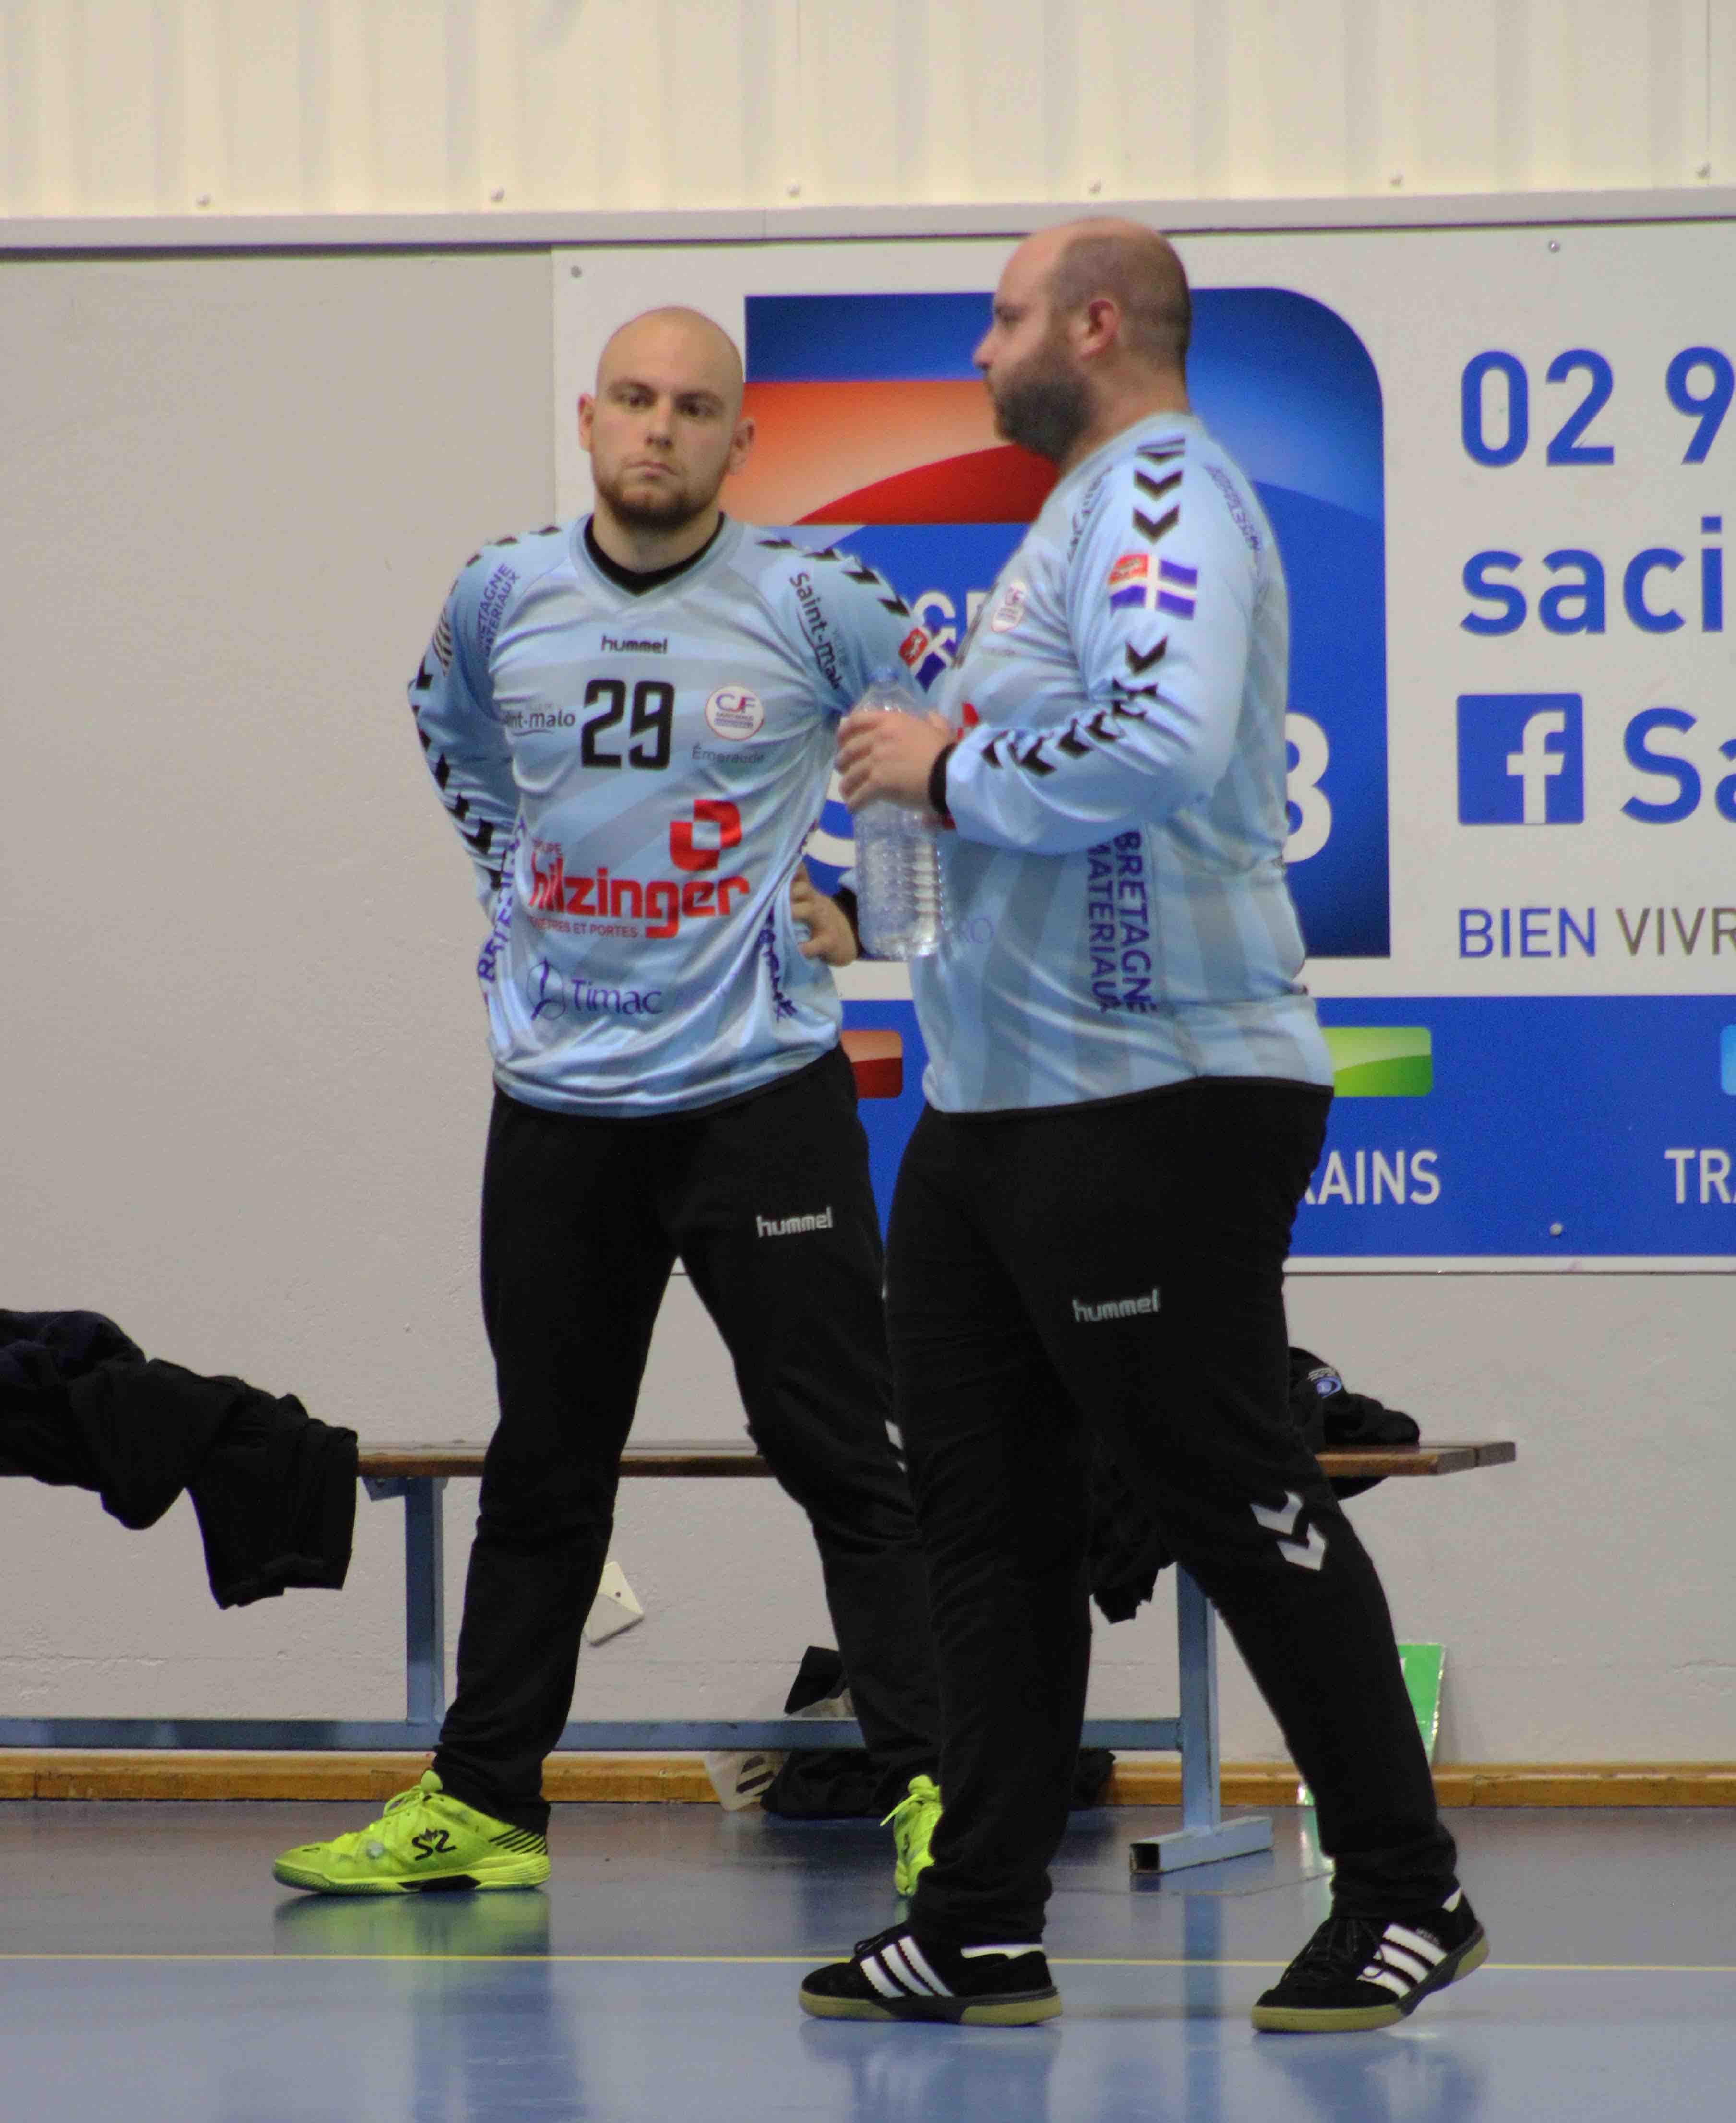 2019nov23 CJF hb _ SC handball (63)